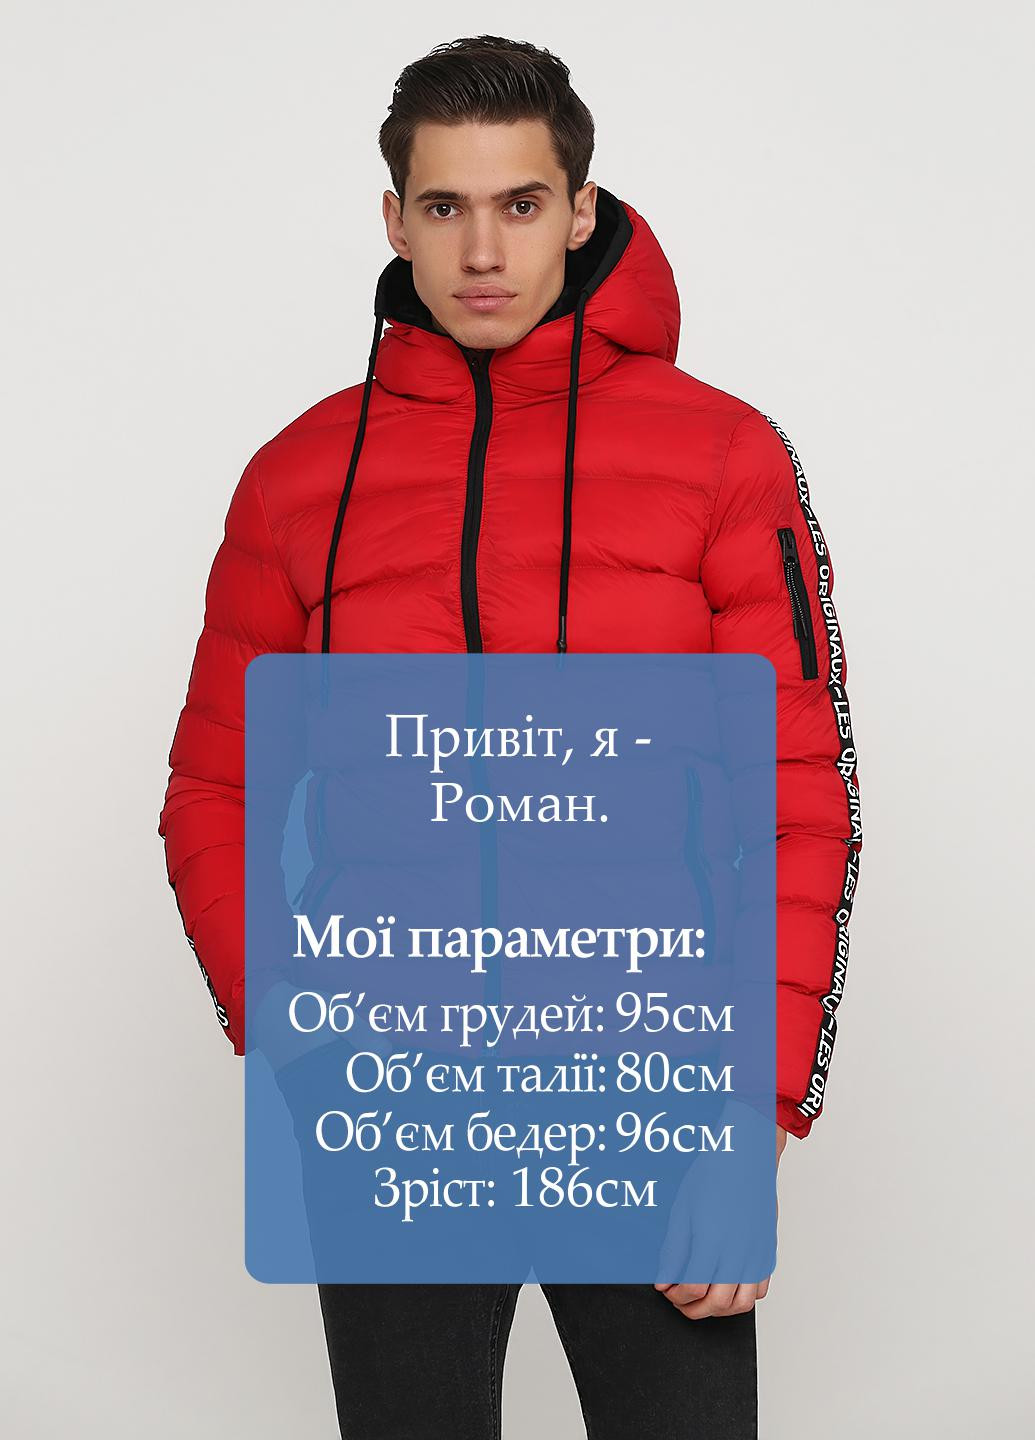 Красная зимняя куртка Madoc